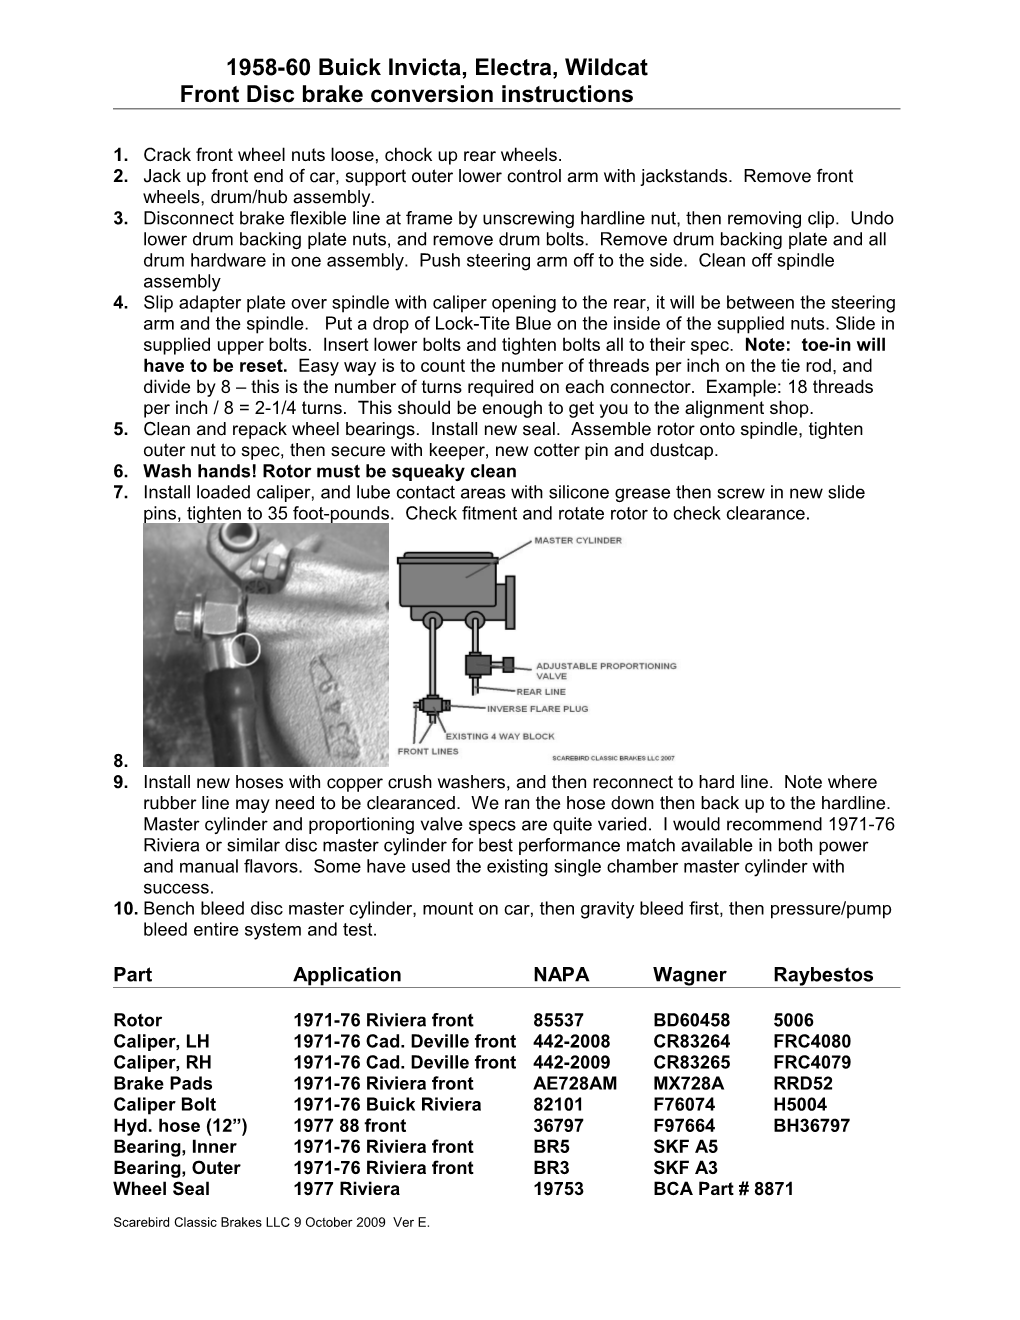 1965-72 Mopar Front Disc Conversion Instructions